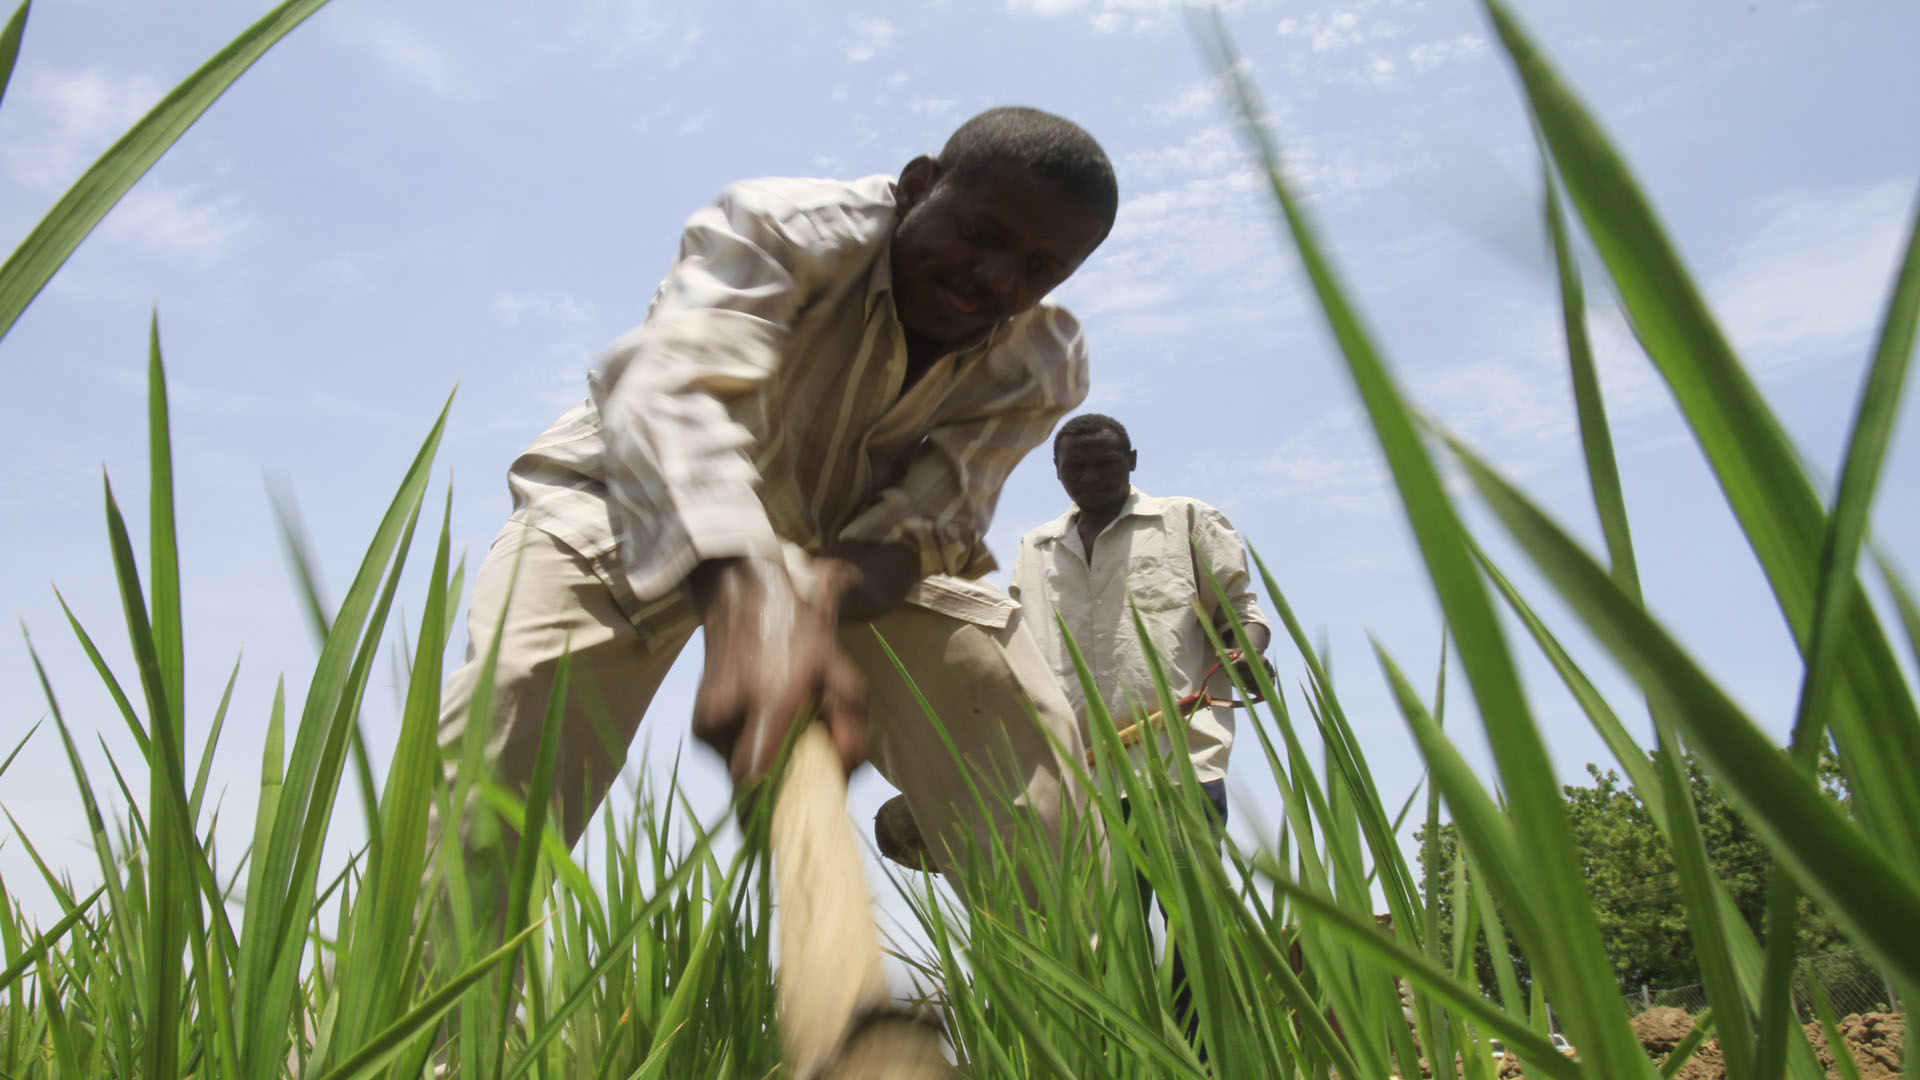 "إهمال حكومي و تغير مناخي".. تراجع الإنتاج الزراعي في إقليم النيل الأزرق